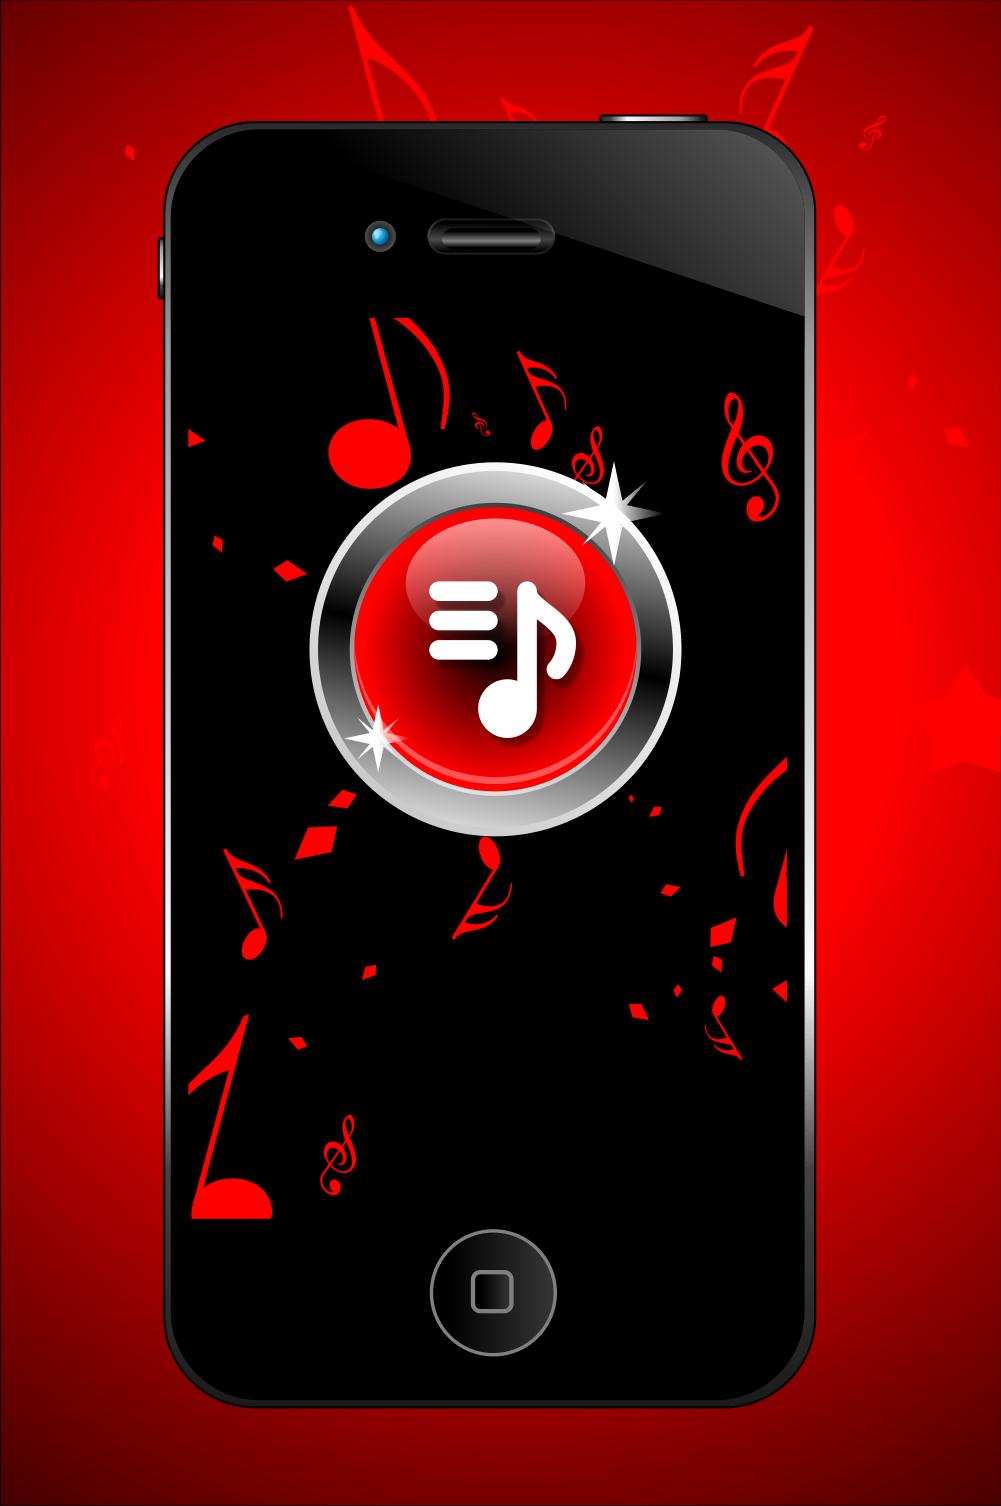 Descarga de APK de Romeo Santos Musica Mp3 para Android